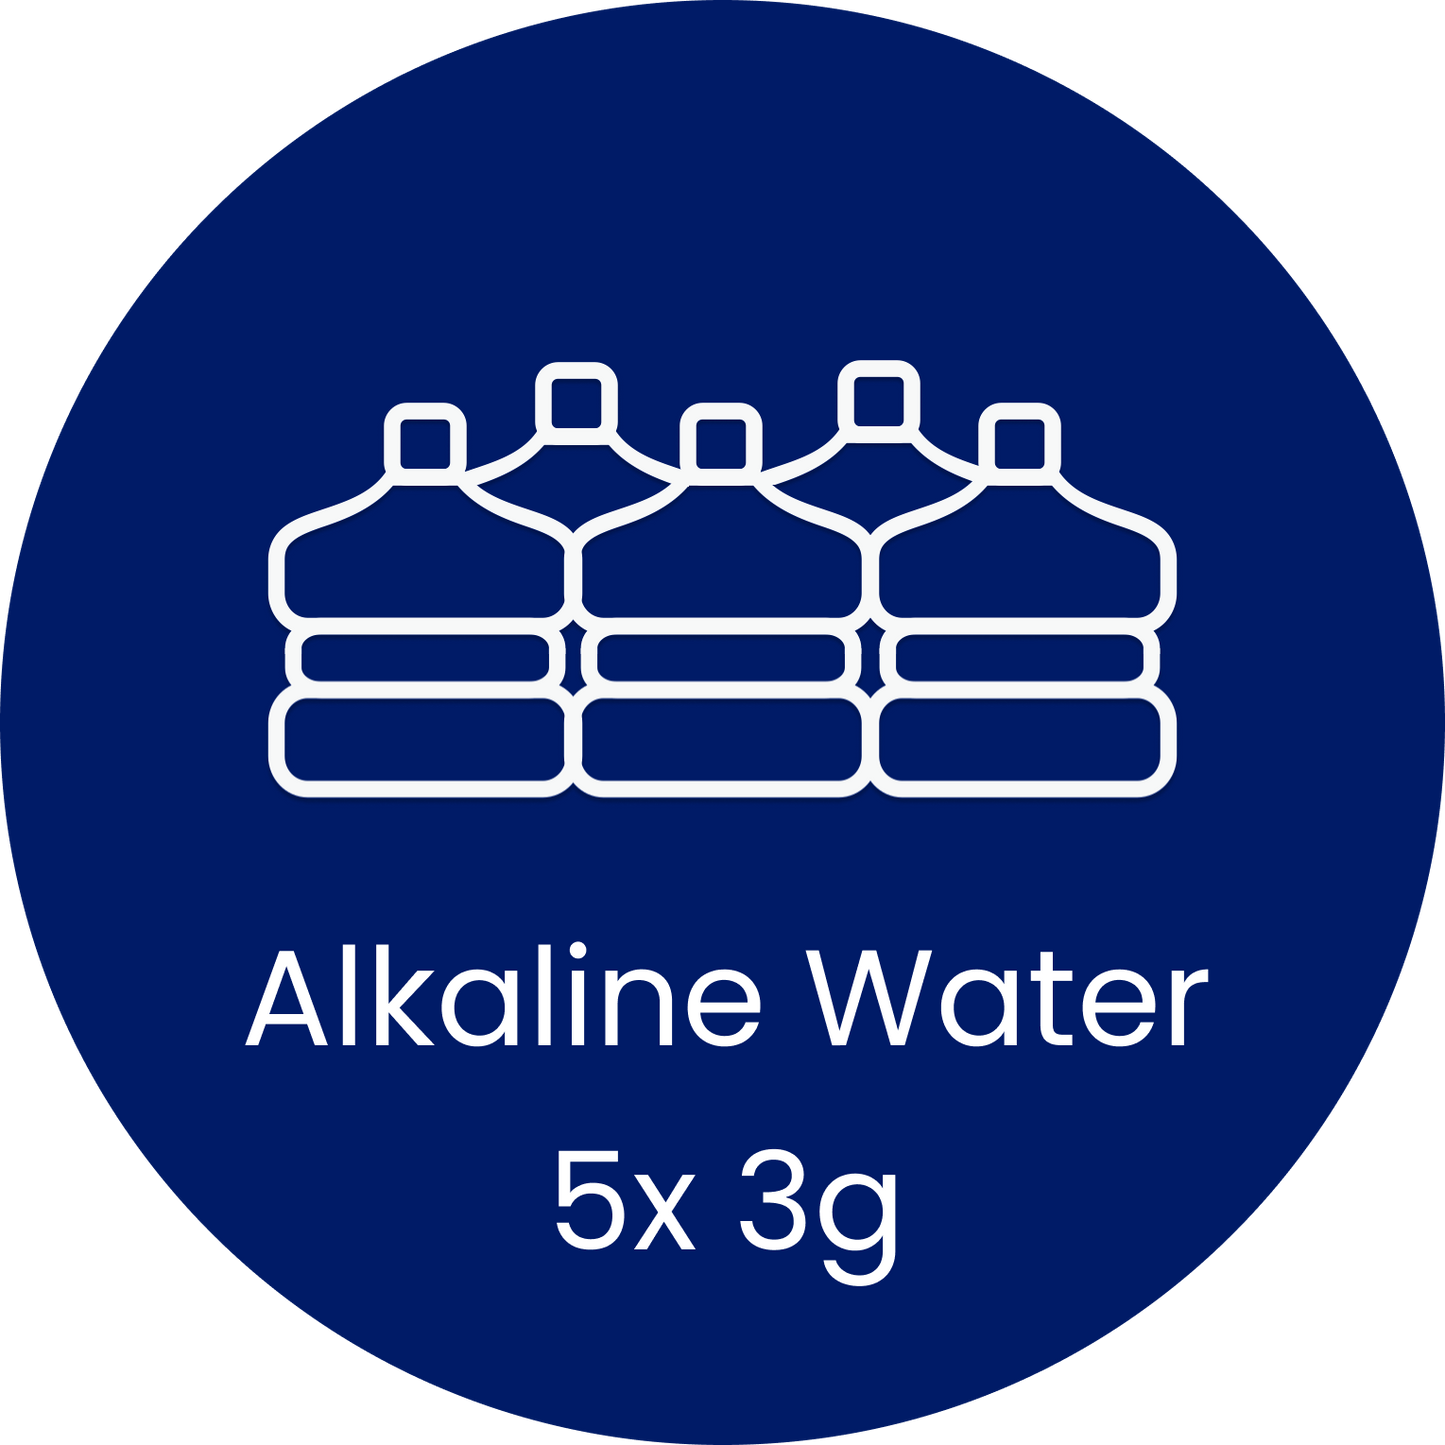 5x 3g Alkaline (15g)